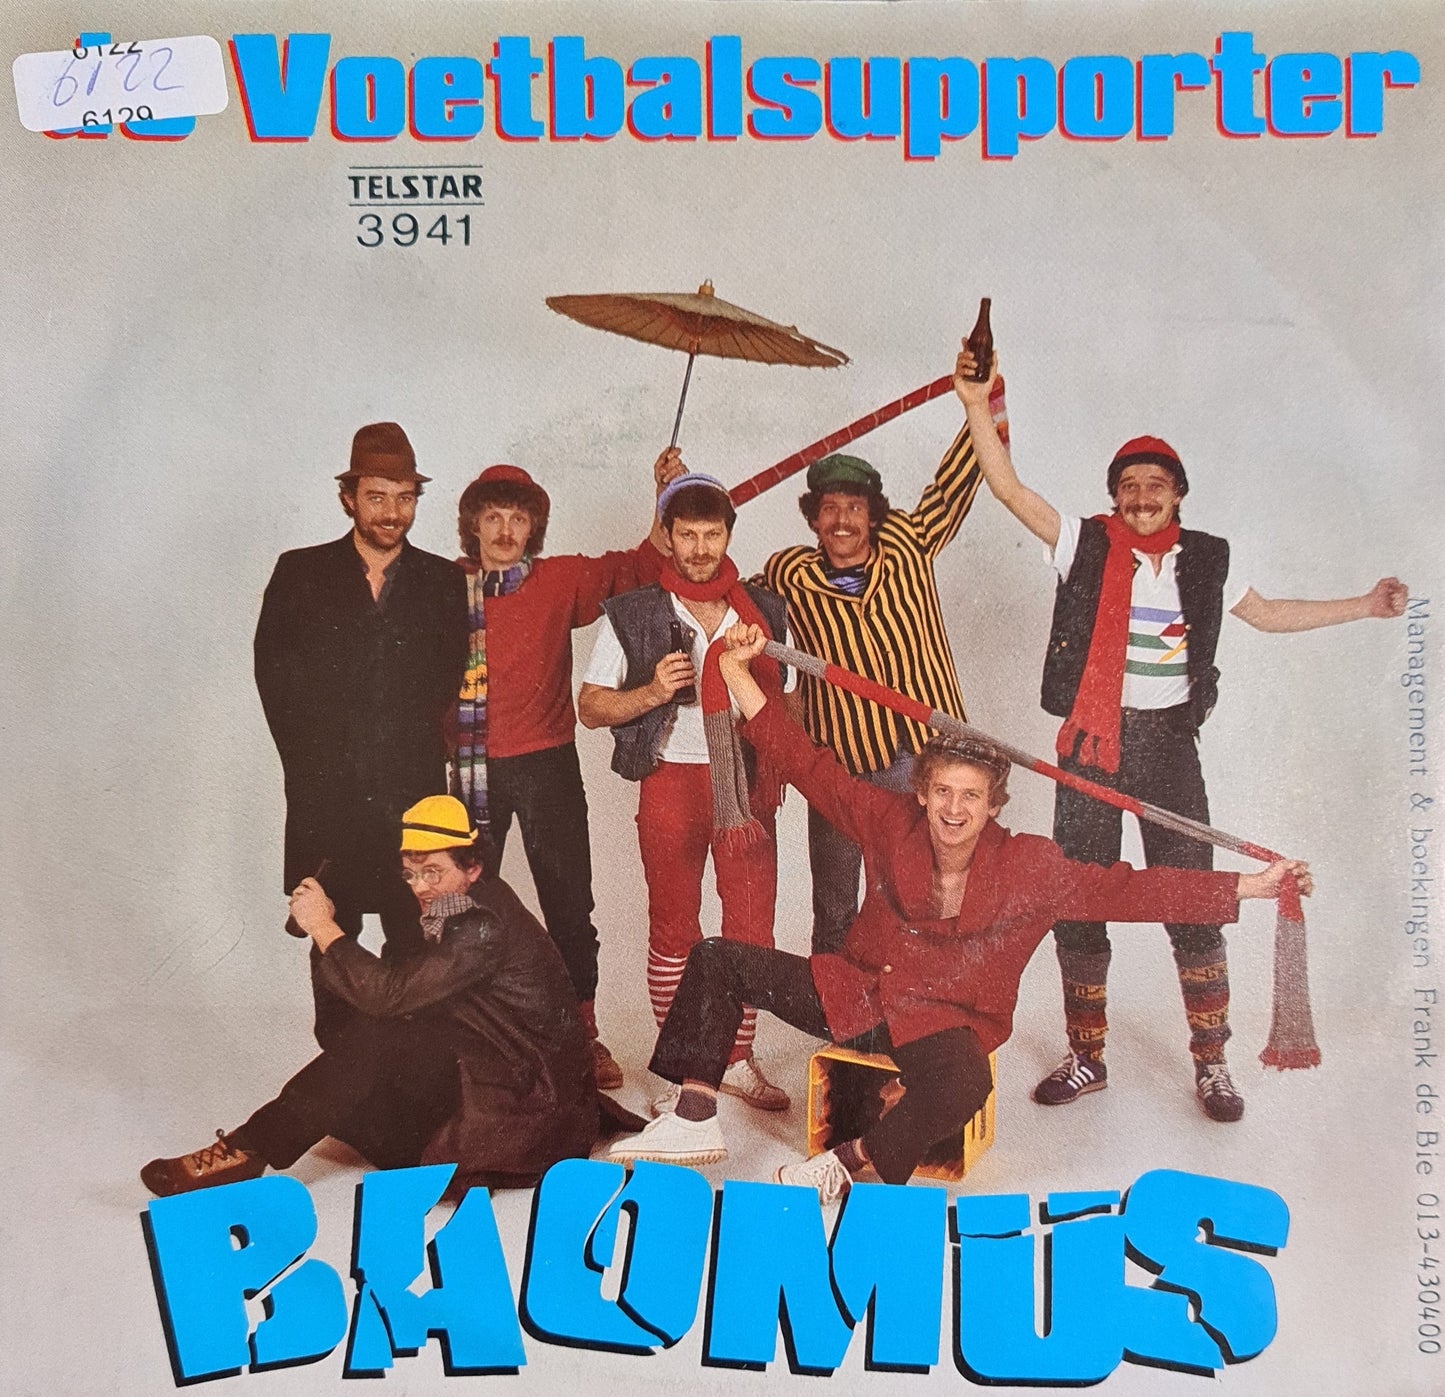 Boamus - De Voetbalsupporters Vinyl Singles VINYLSINGLES.NL